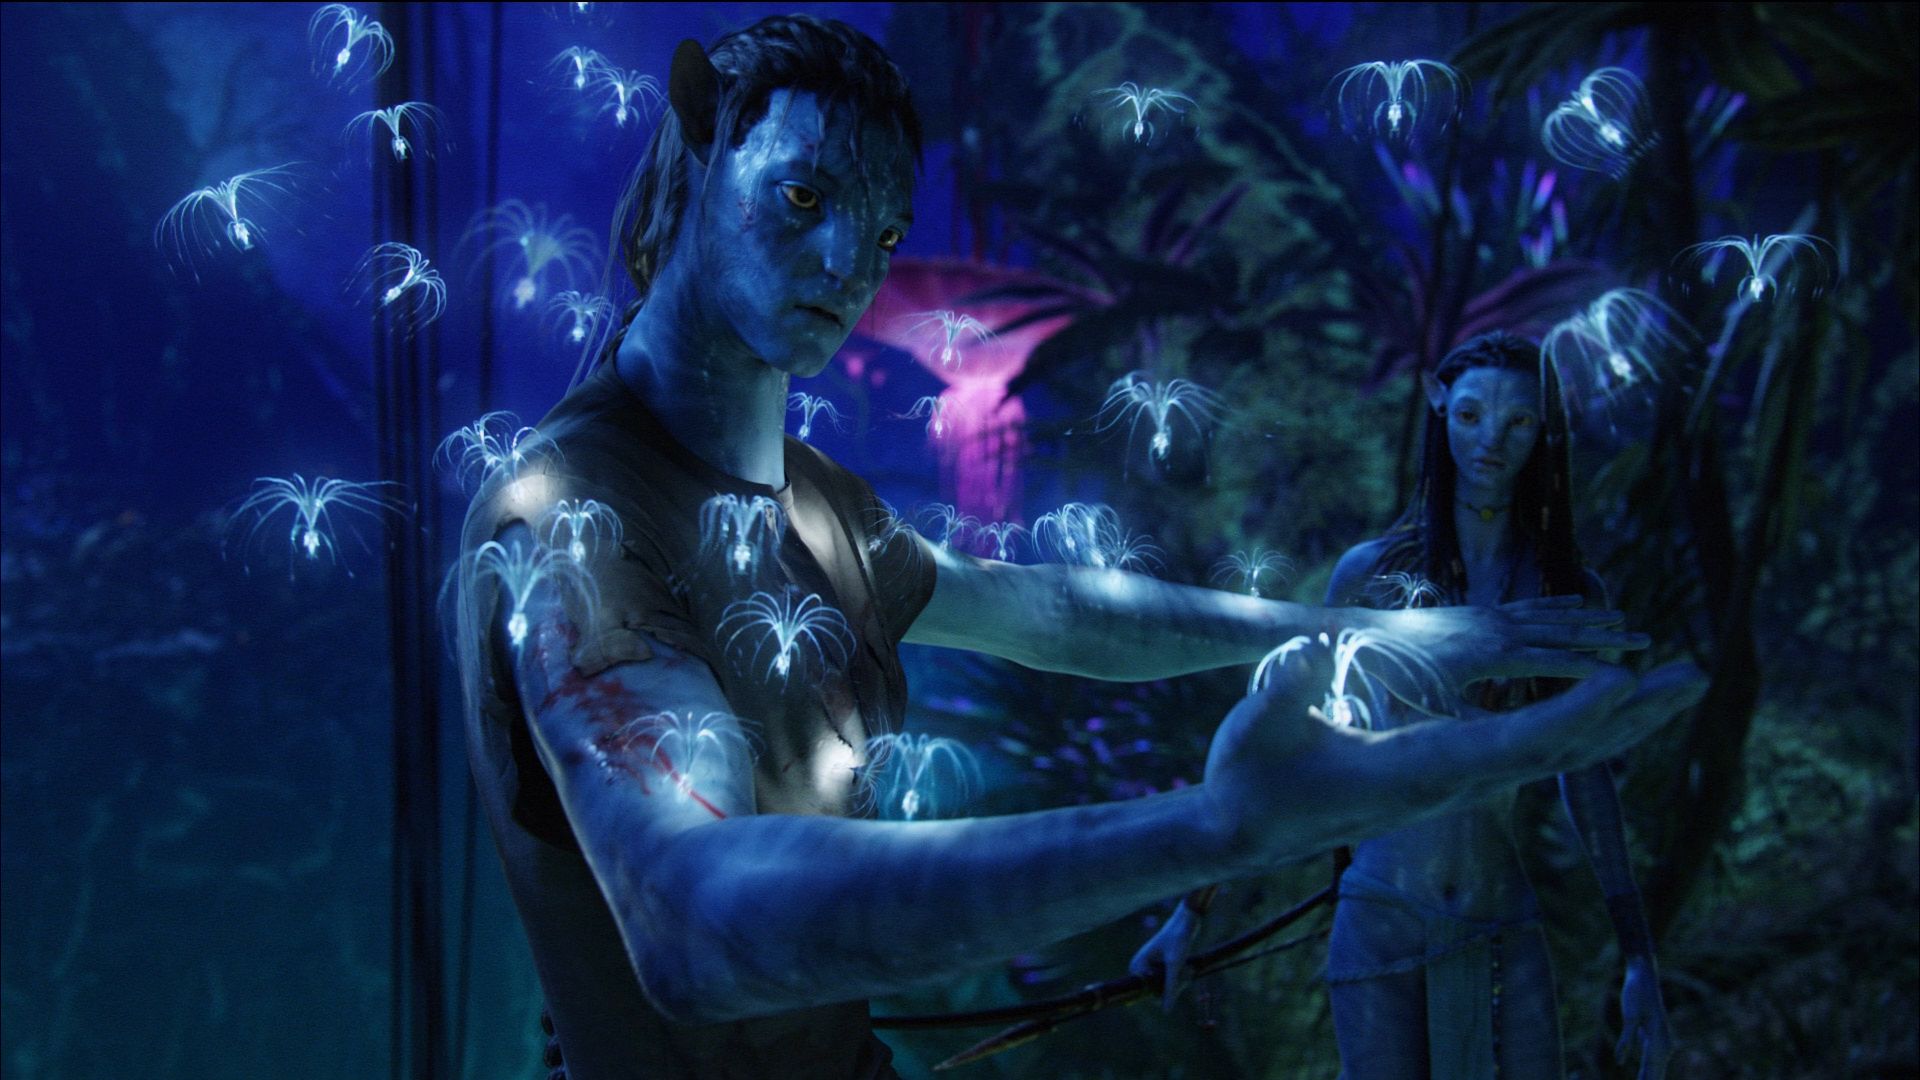 Descarga gratis la imagen Avatar, Películas en el escritorio de tu PC